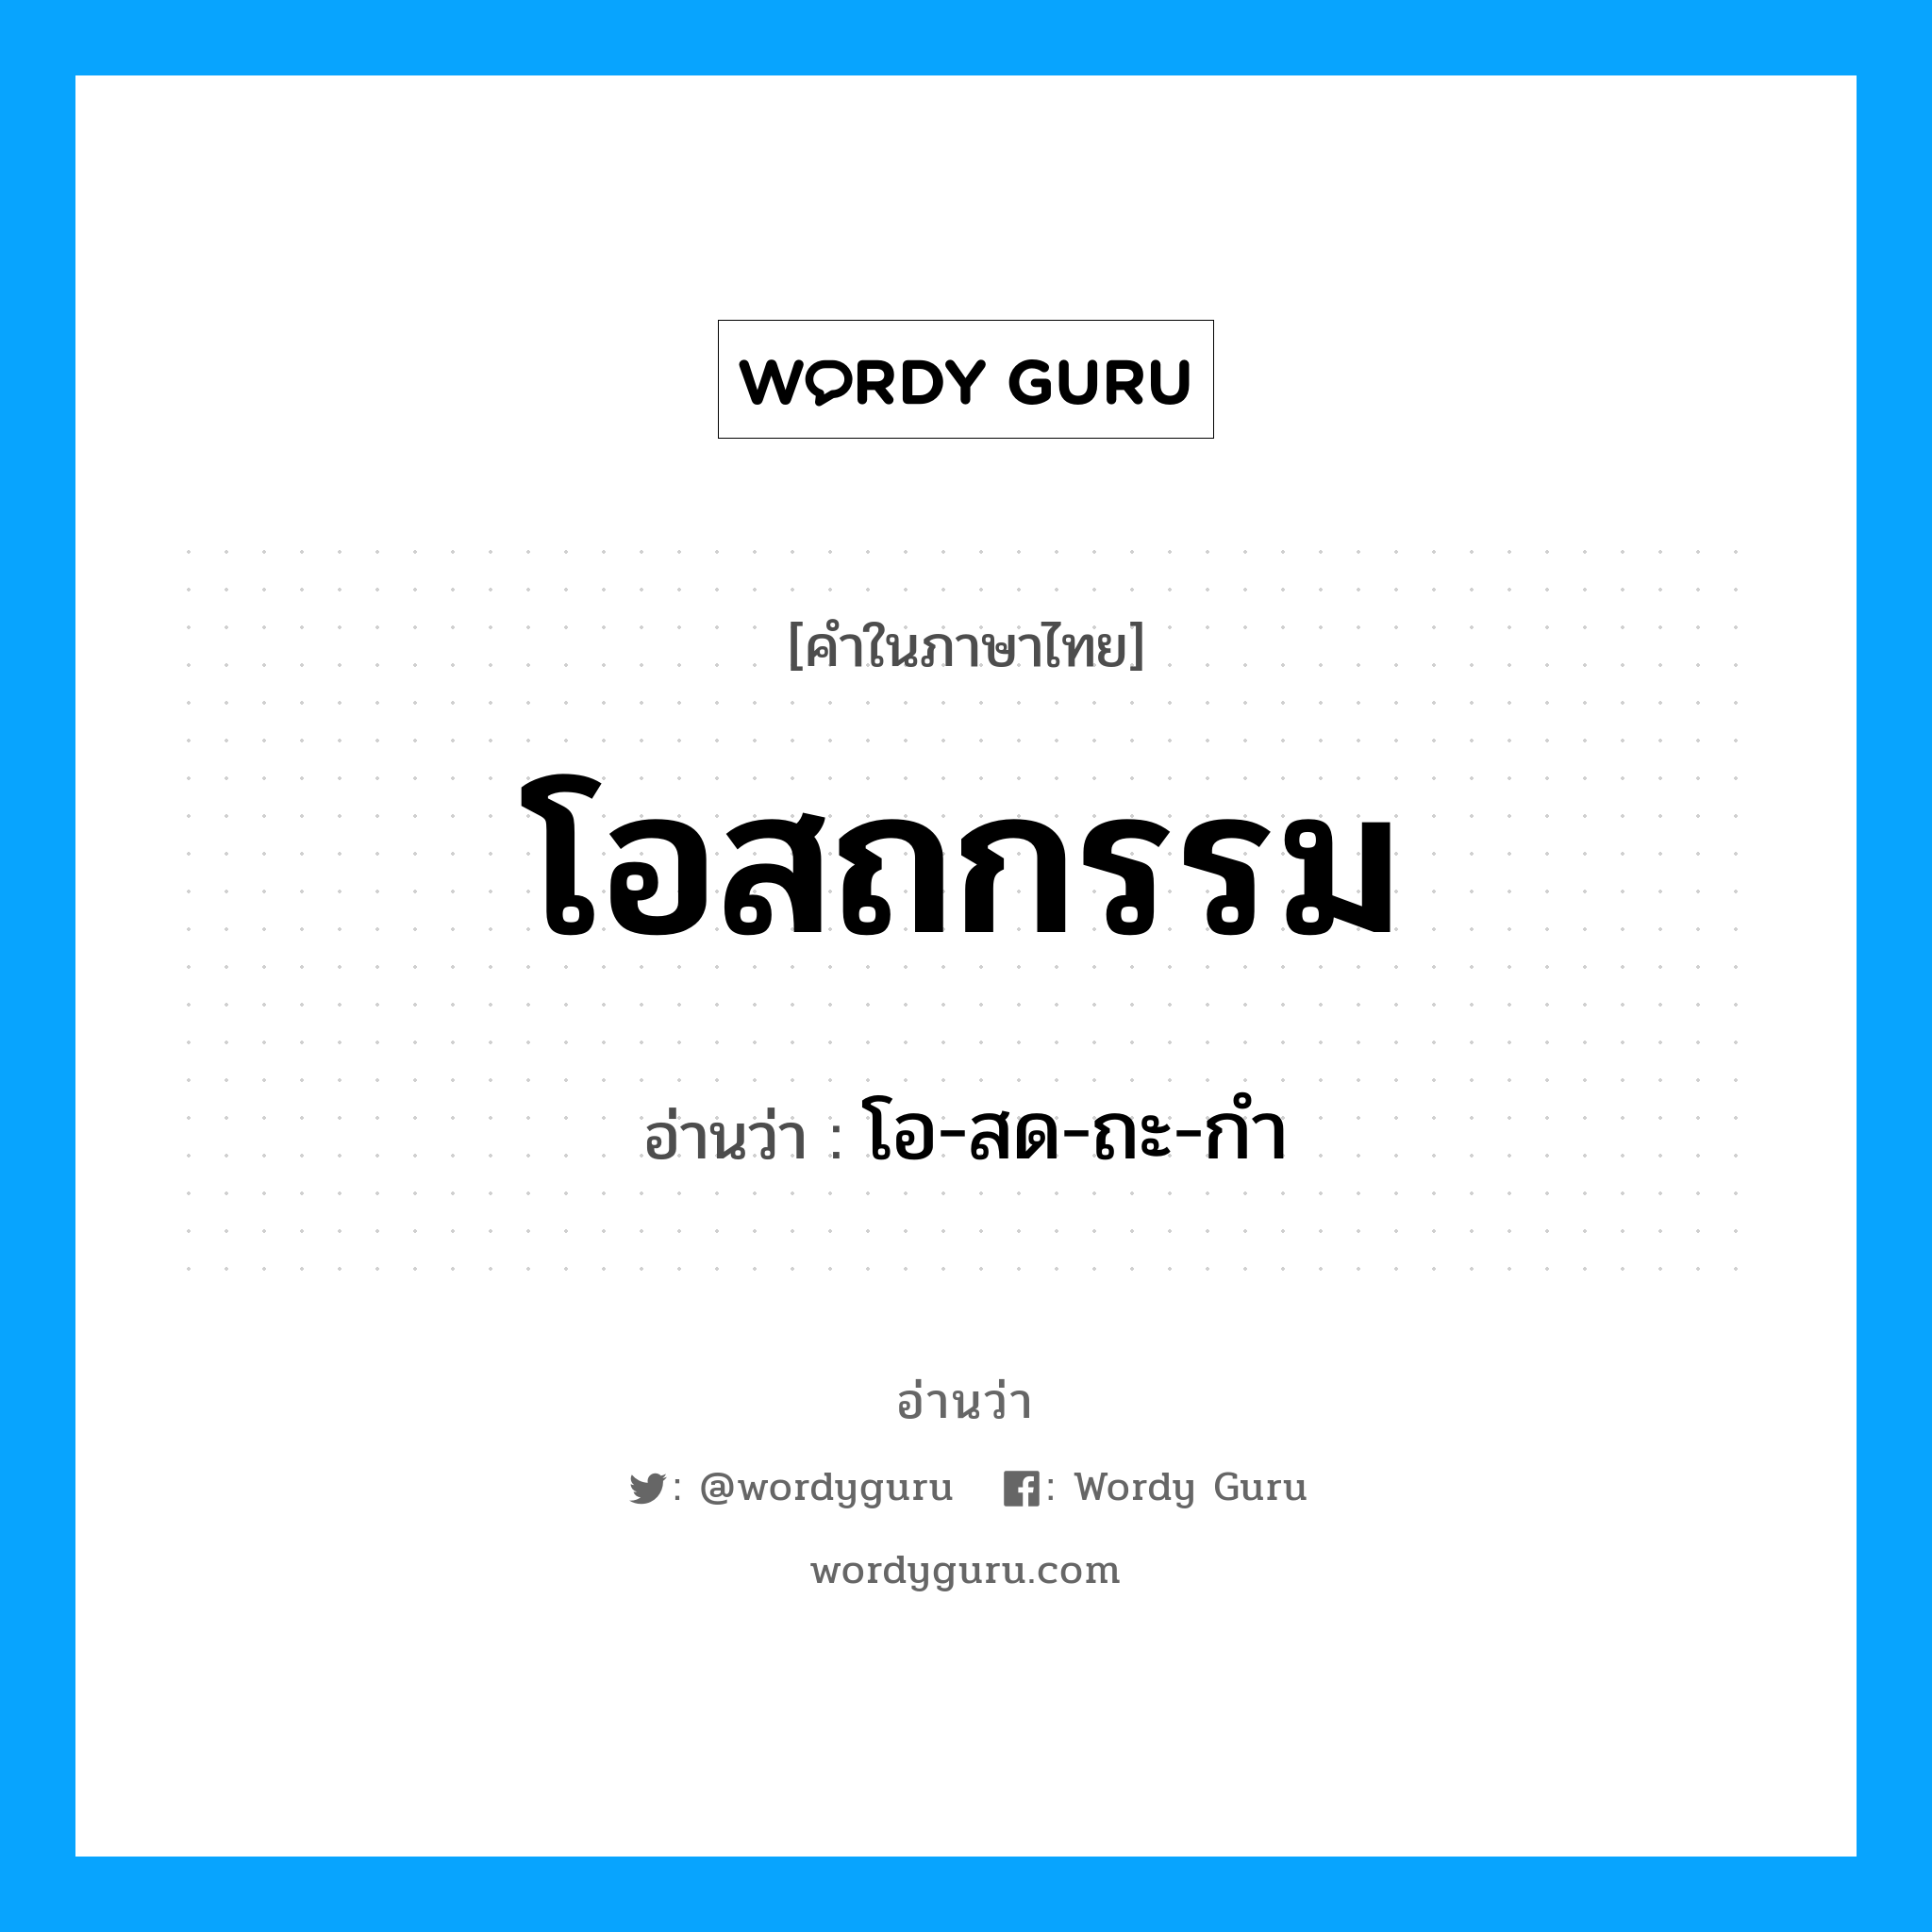 โอ-สด-ถะ-กำ เป็นคำอ่านของคำไหน?, คำในภาษาไทย โอ-สด-ถะ-กำ อ่านว่า โอสถกรรม